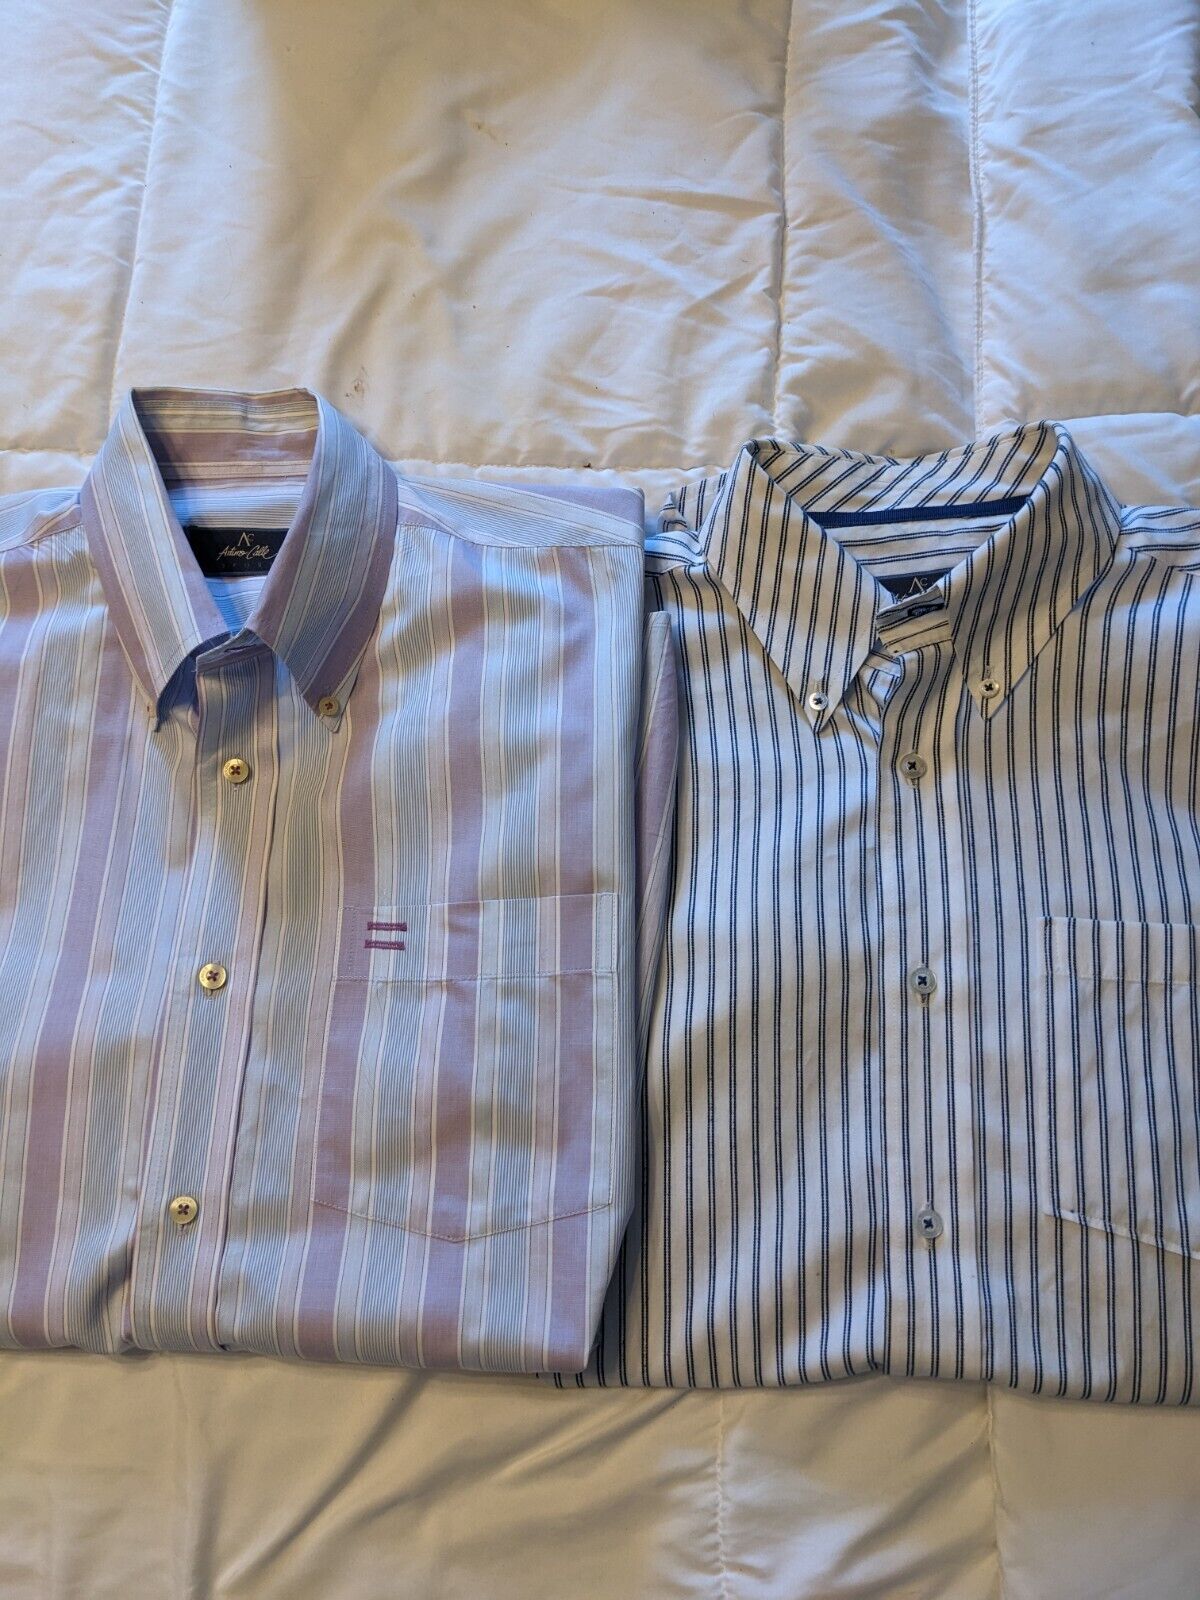 Arturo Calle Short Sleeve Shirts 2 Striped Large … - image 3